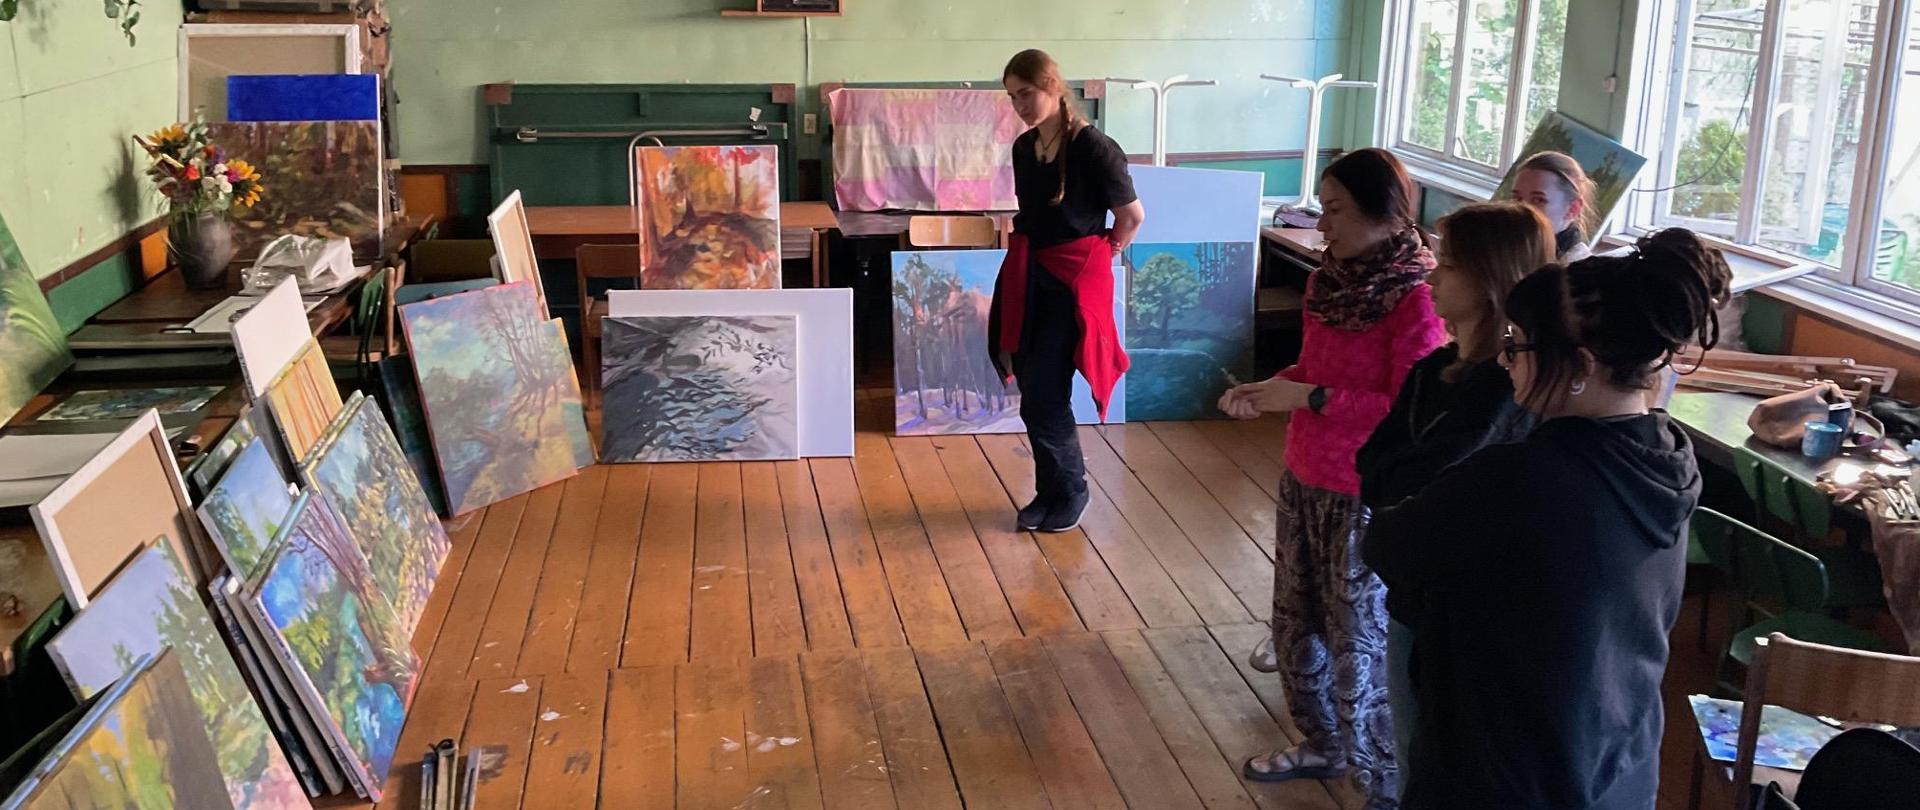 W sali nauczyciel Anna Chmielnik i uczennice stoją przy obrazach malarskich. Nauczycielka omawia prace.
